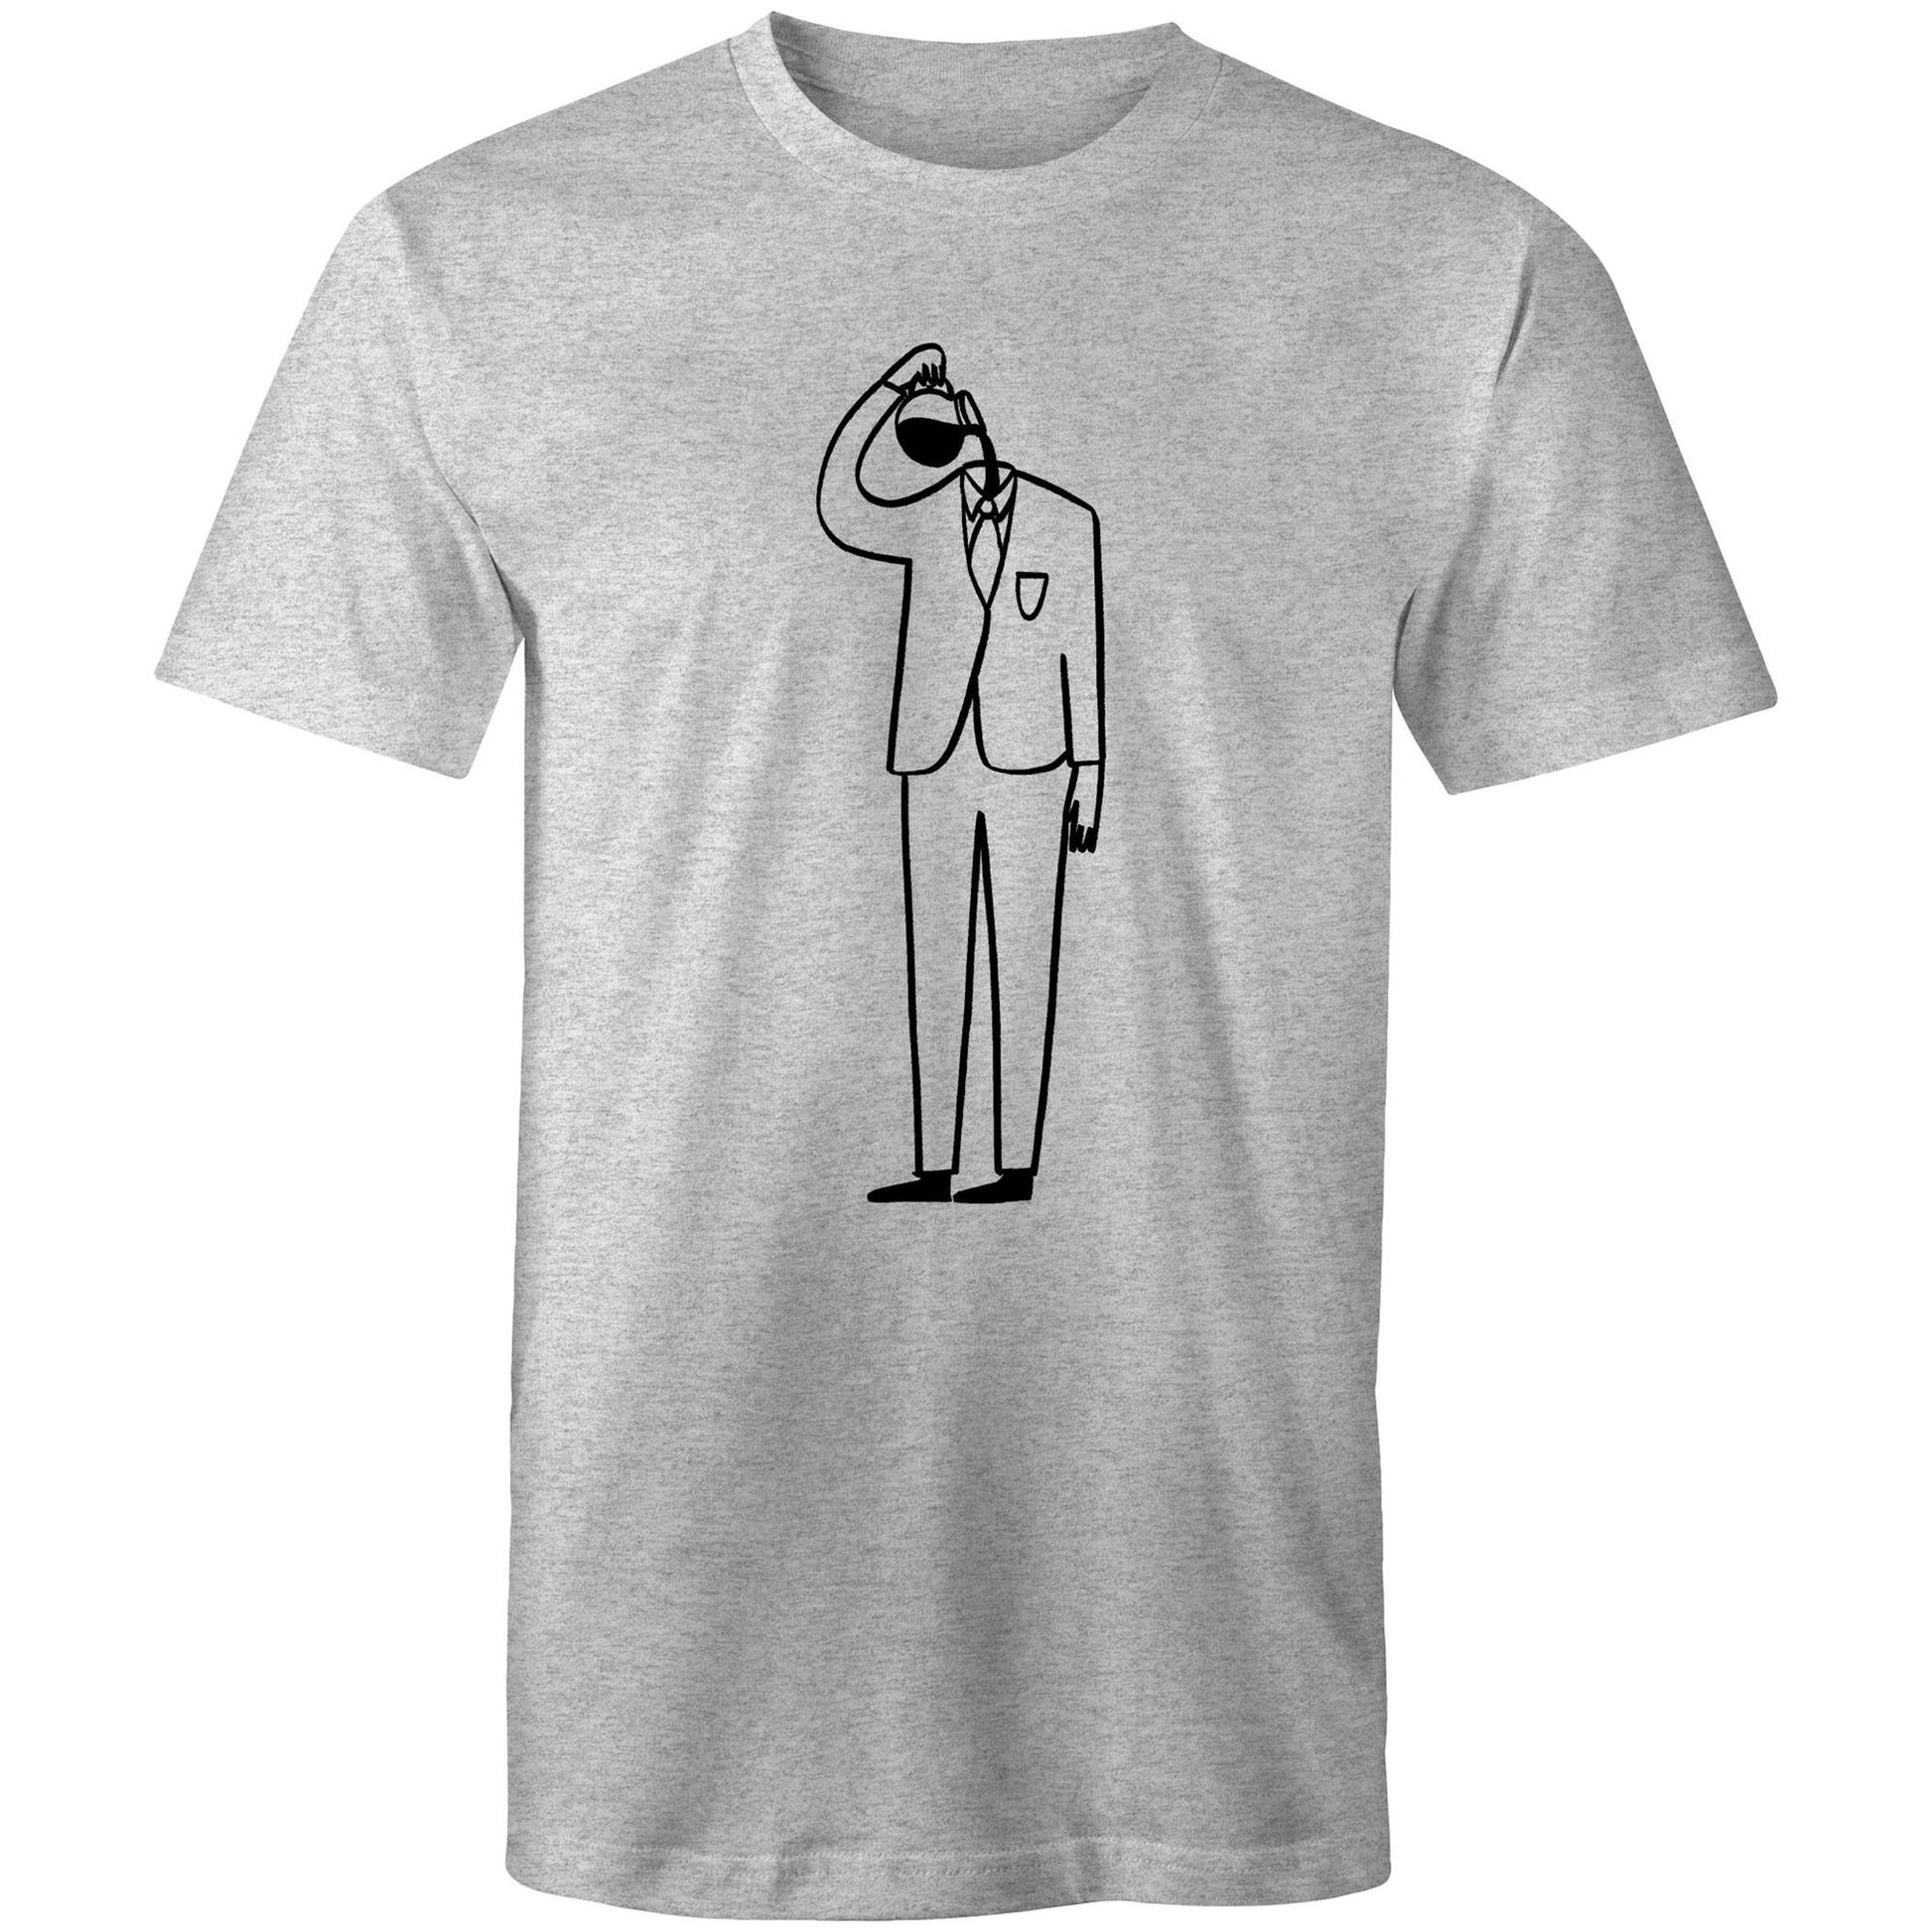 Coffee Brain - Mens T-Shirt Grey Marle Mens T-shirt Coffee